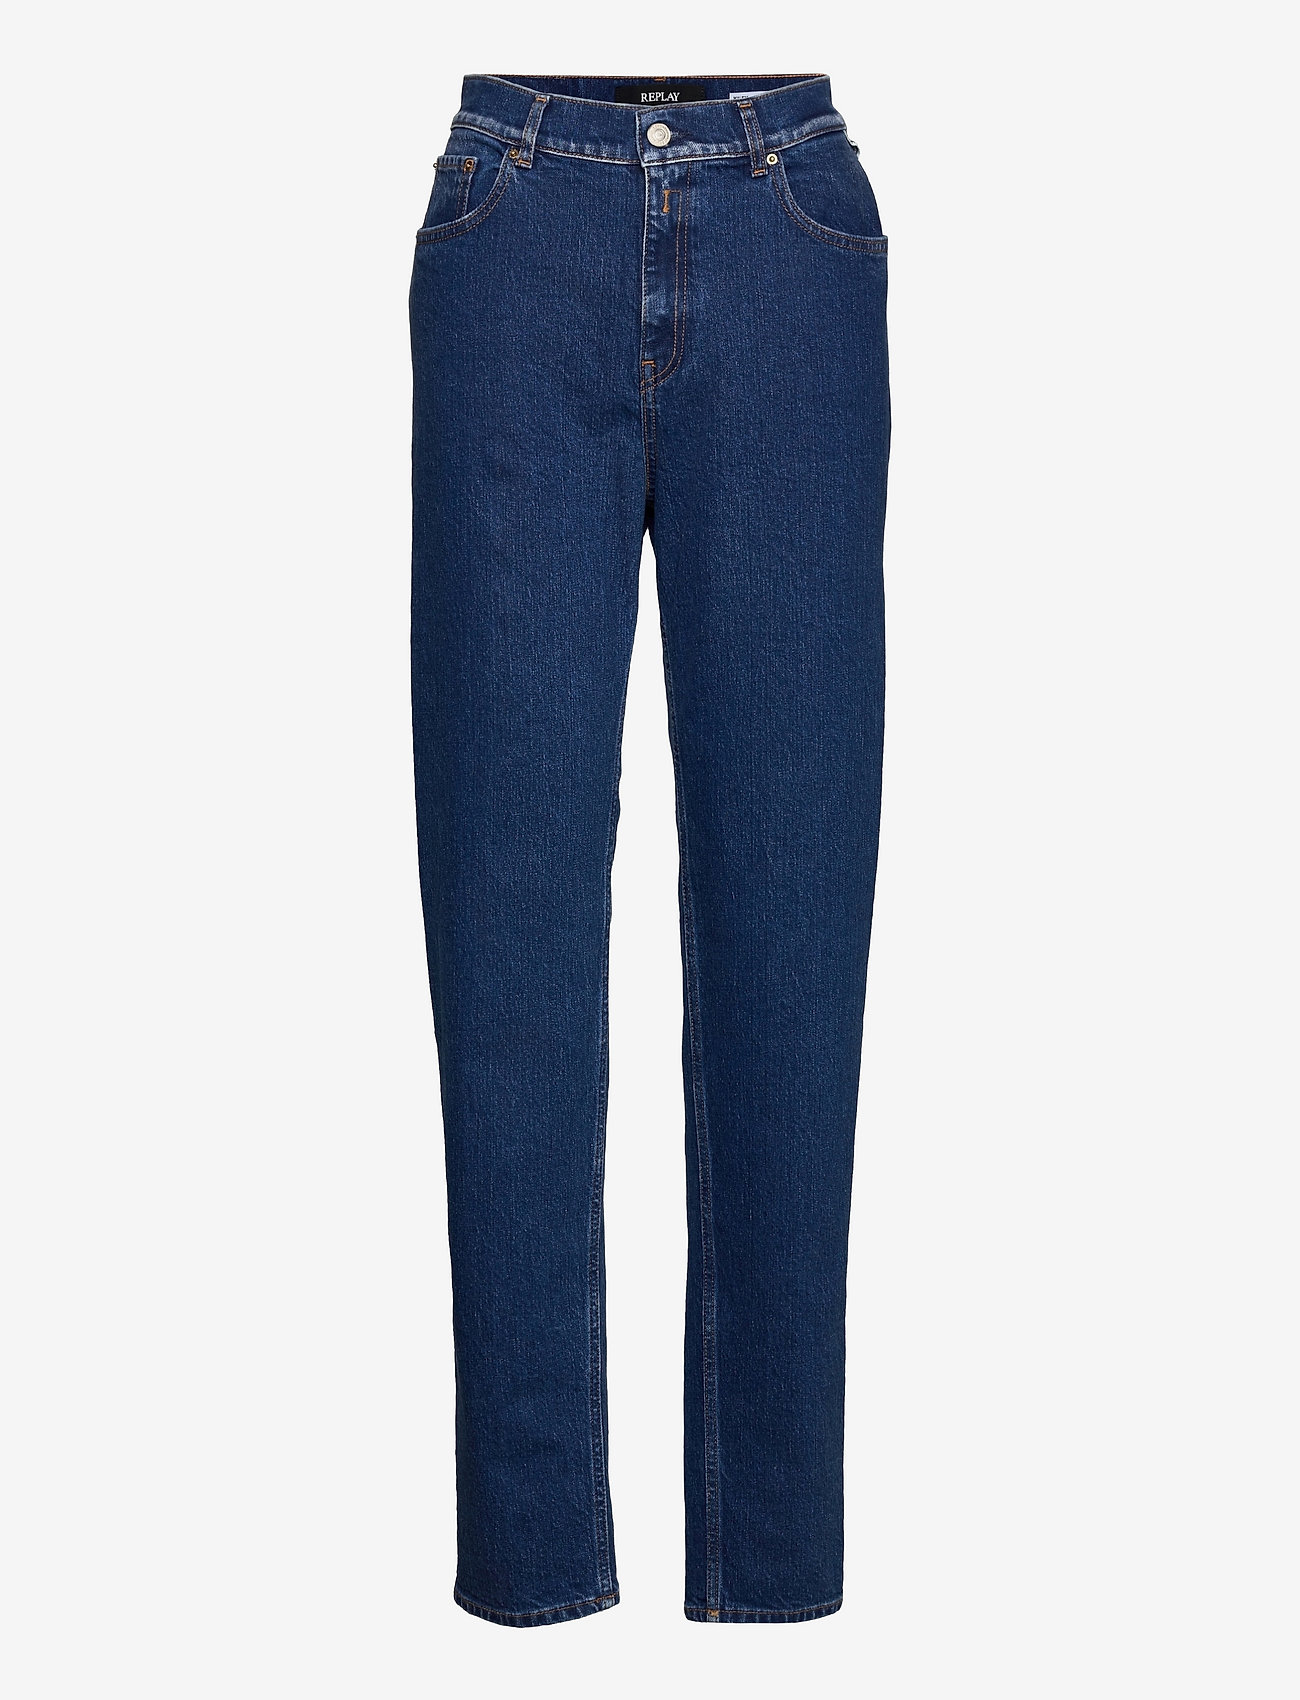 Replay - KILEY Trousers - raka jeans - medium blue - 0